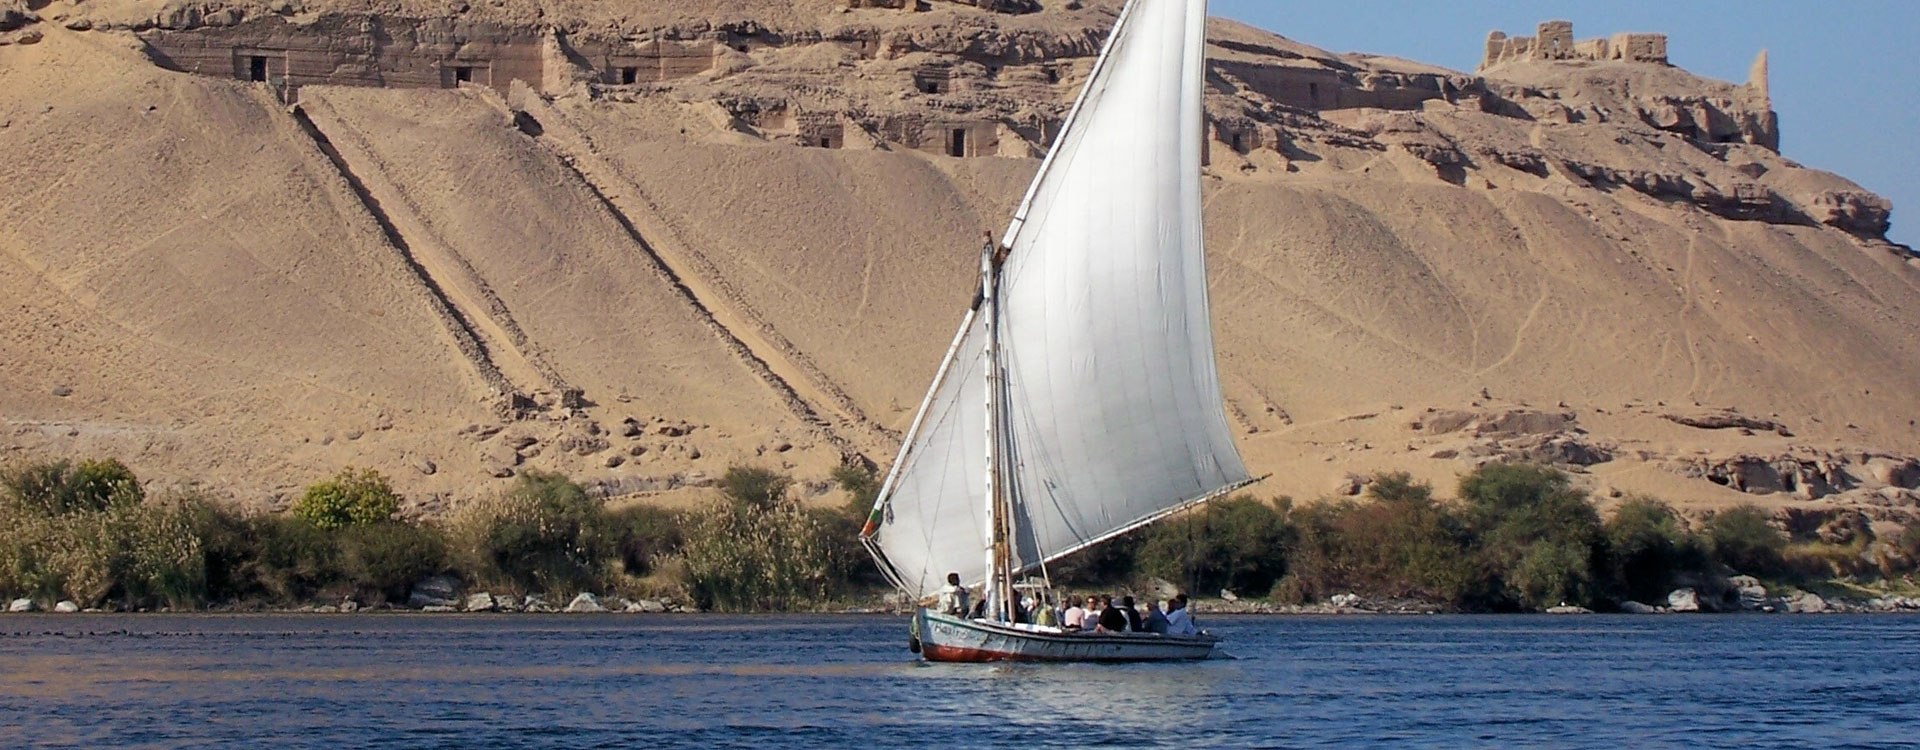 aswan private tour